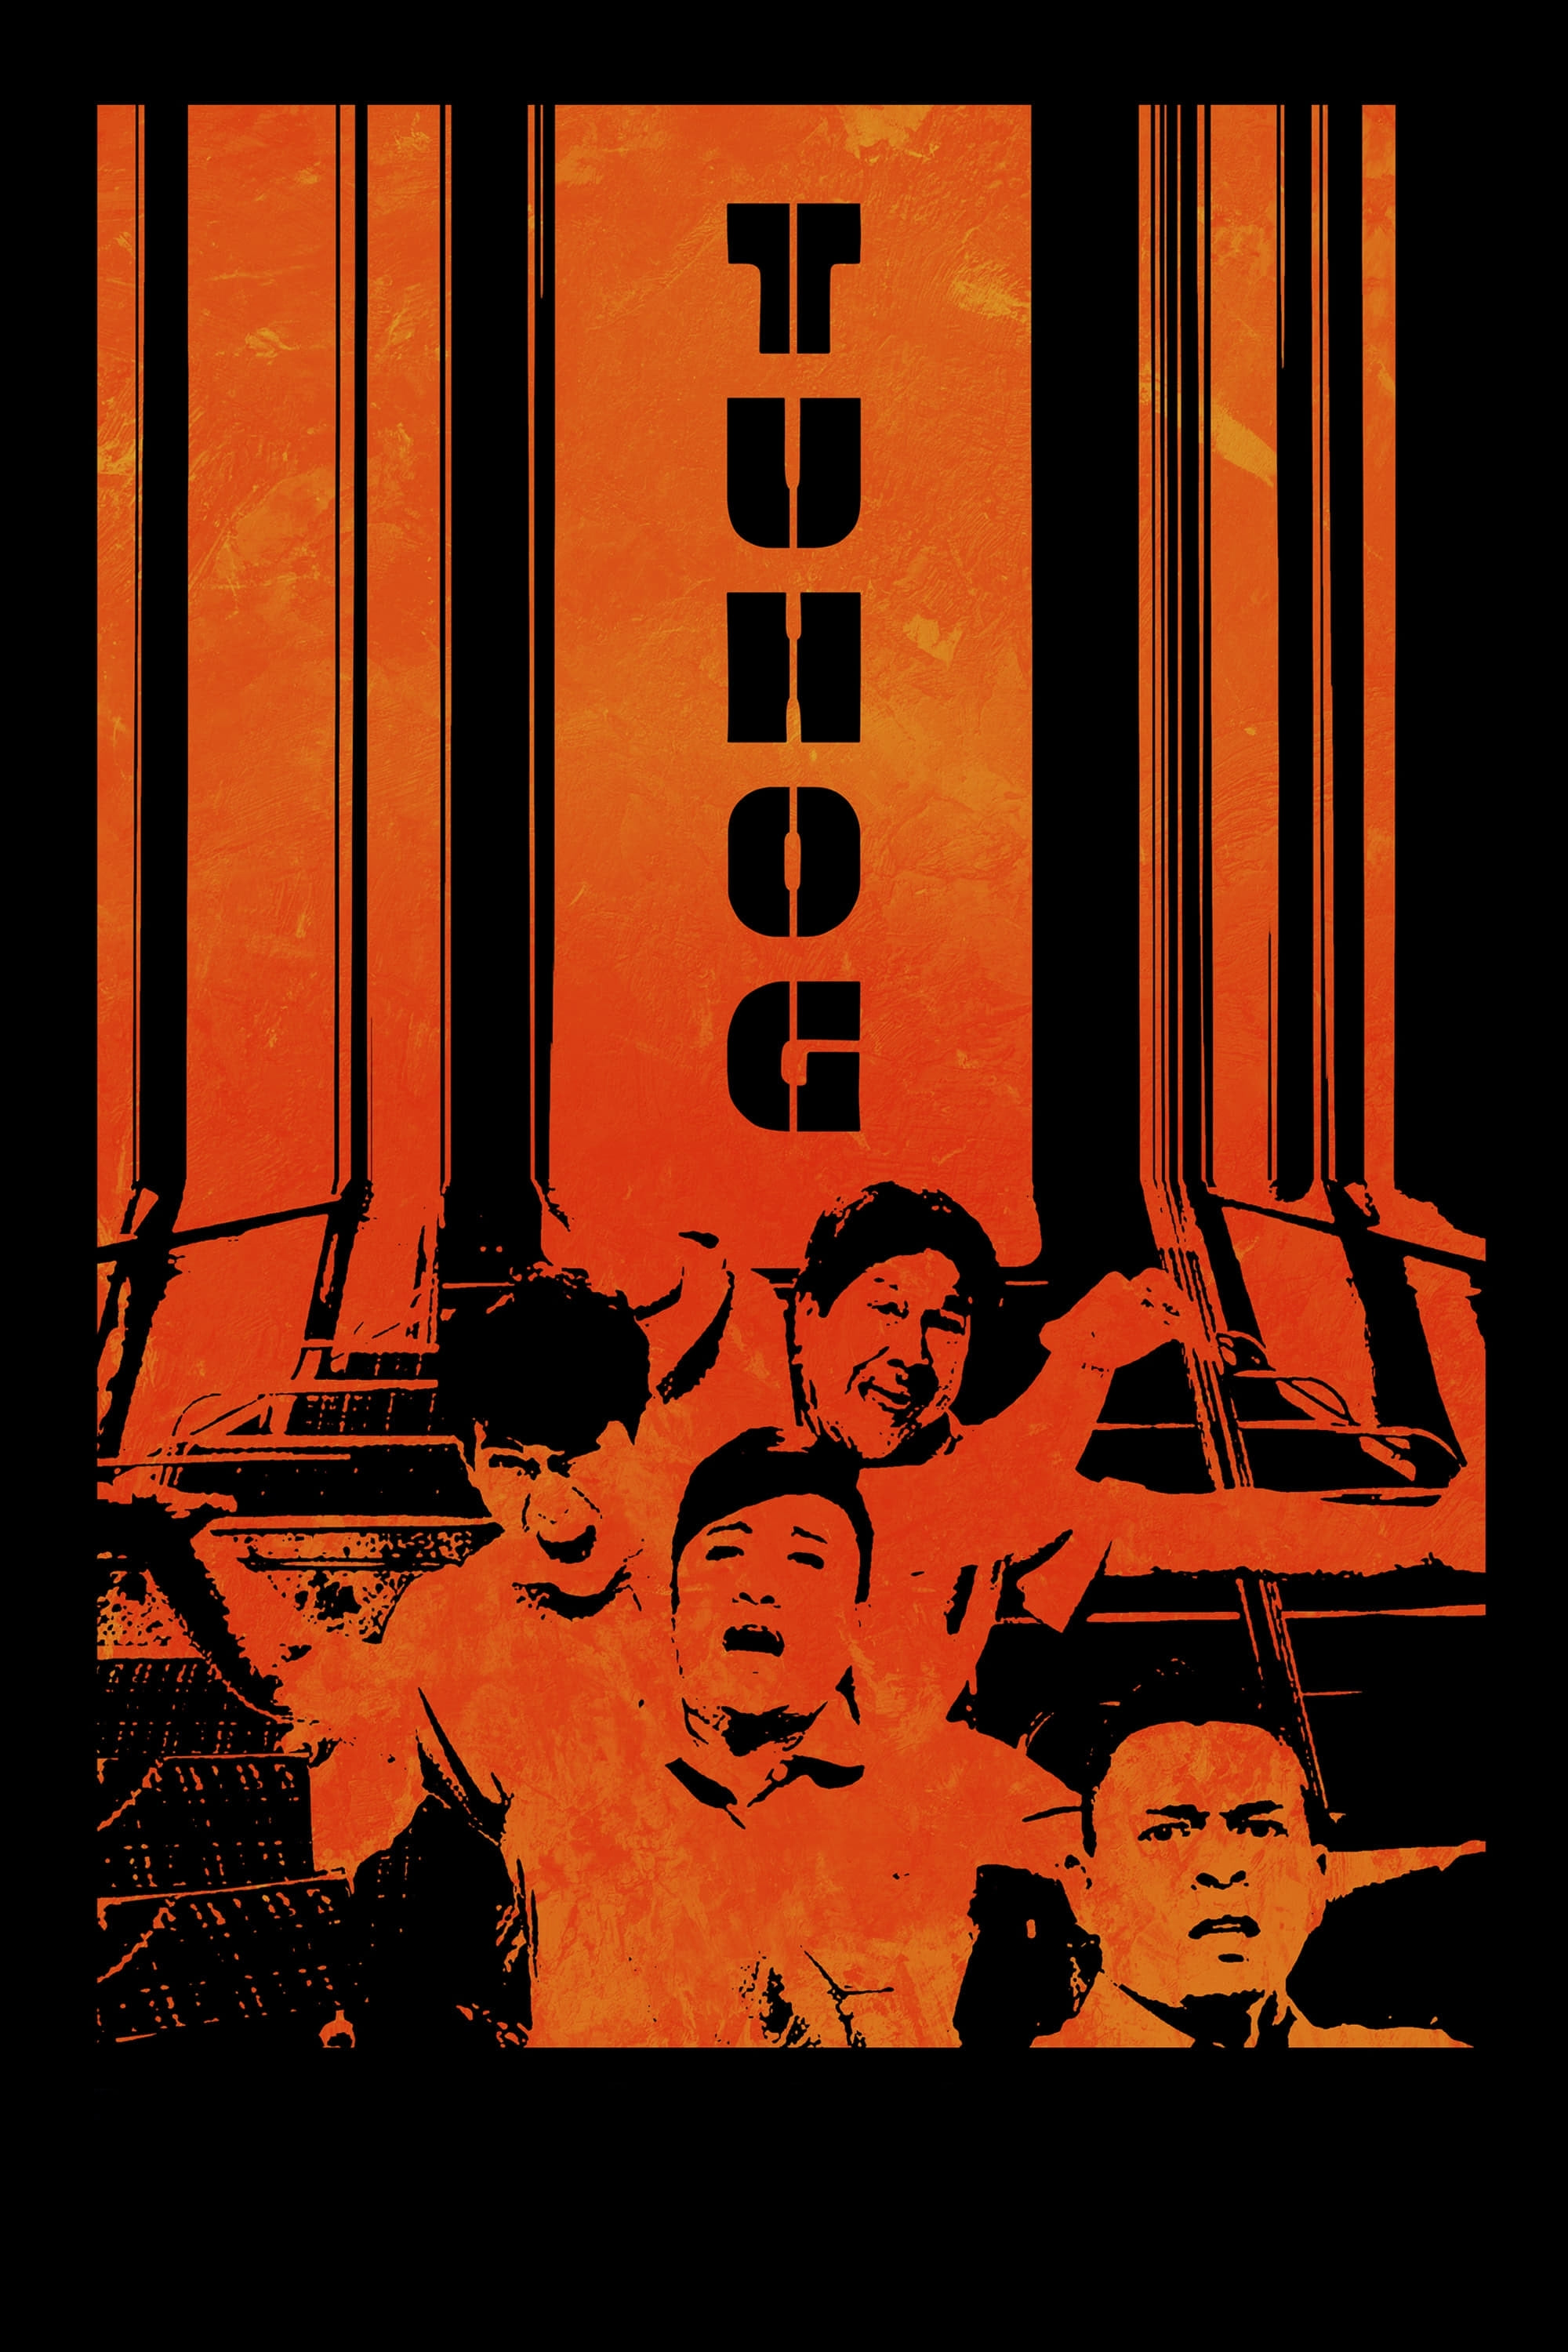 Tuhog (2013) постер